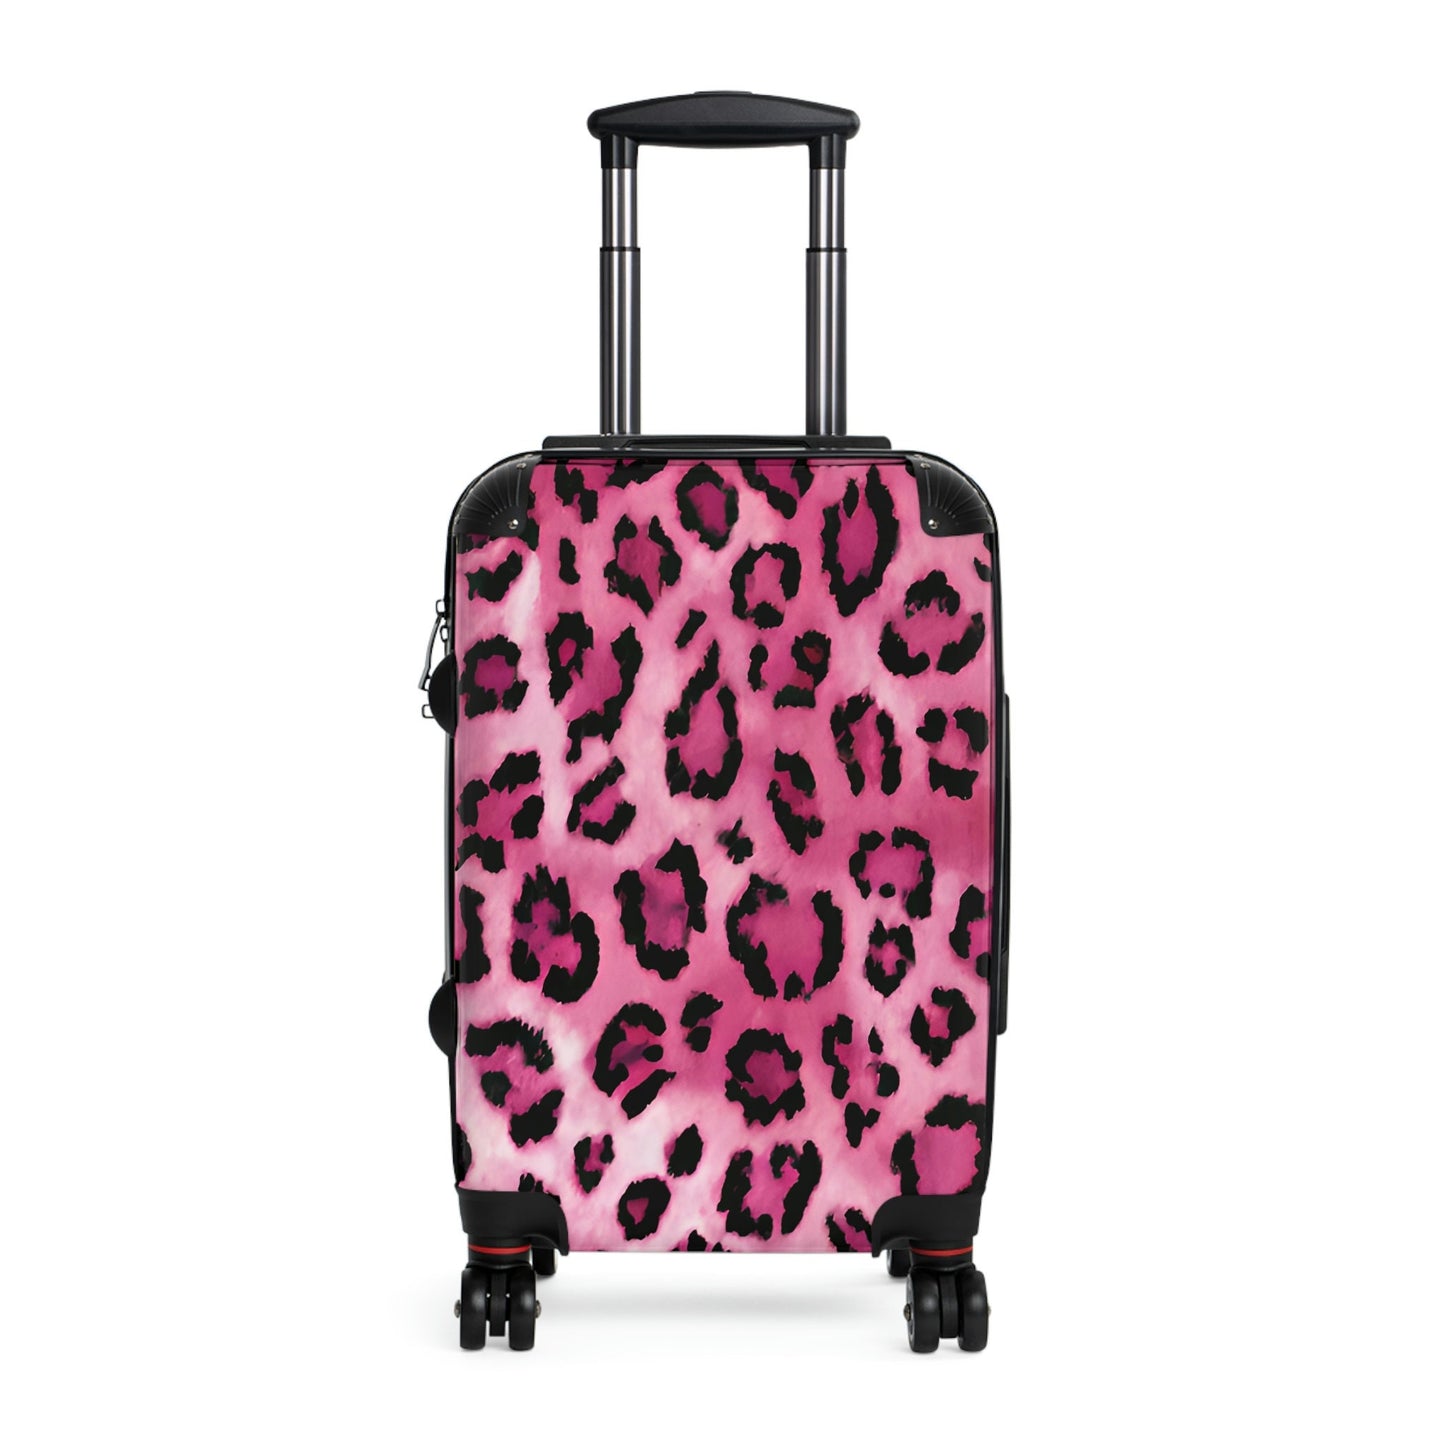 Ladies' suitcase, Women suitcase, Ladies Pink Cheetah Suitcase, Ladies Pink Leopard Suitcase, Animal Print Suitcase, Women carryon bag